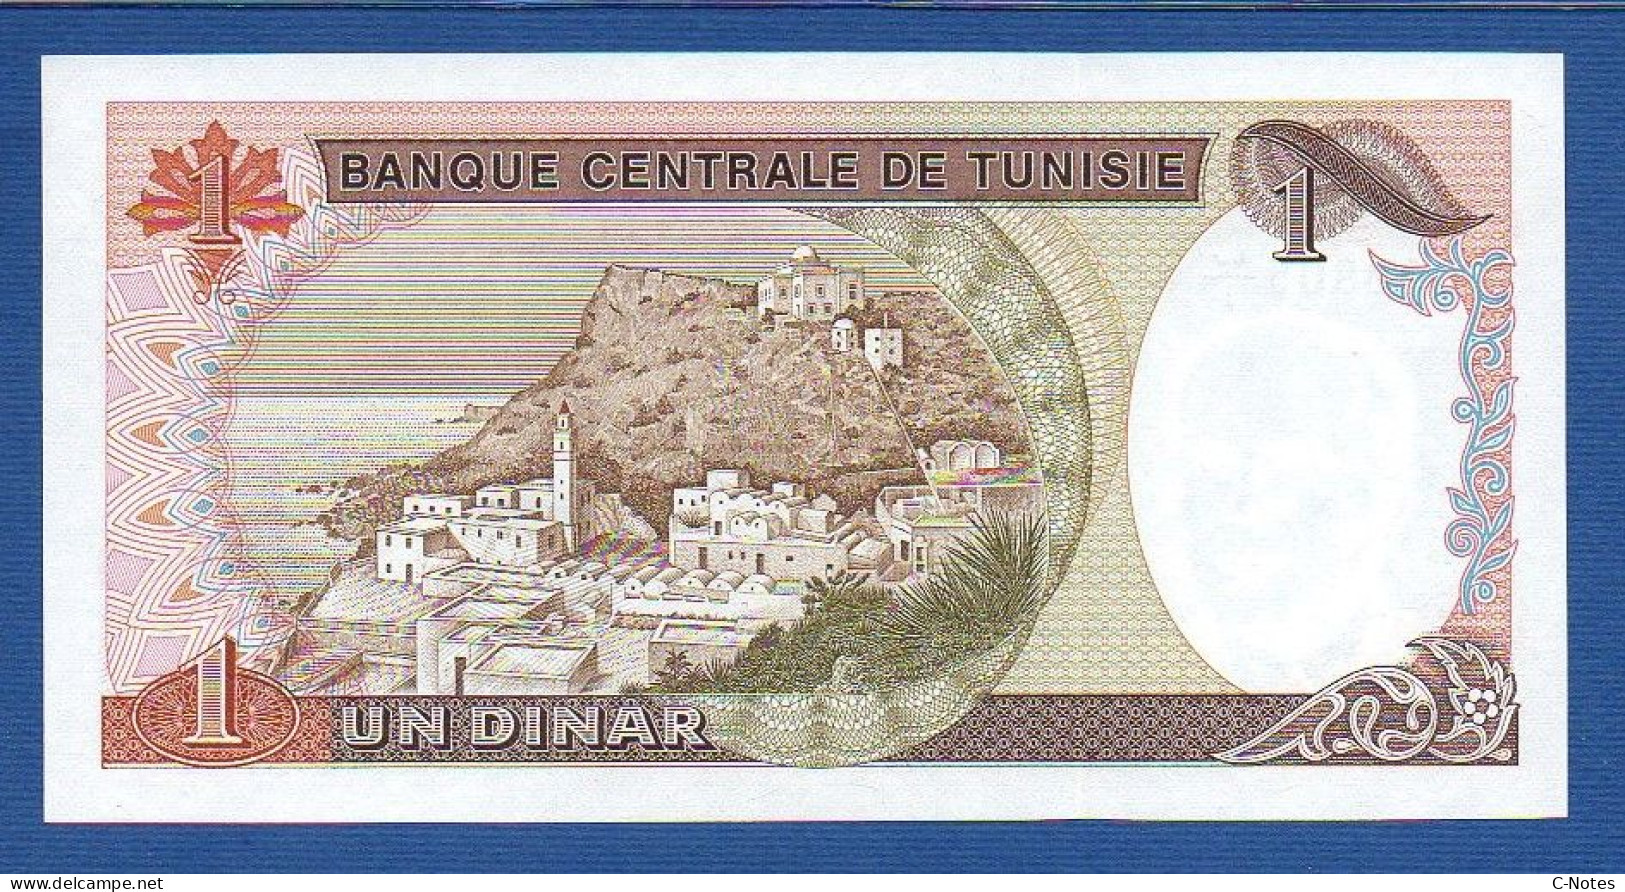 TUNISIA - P.74 – 1 Dinar 15.10.1980 UNC, Serie 8/1 099805 - Tunisie